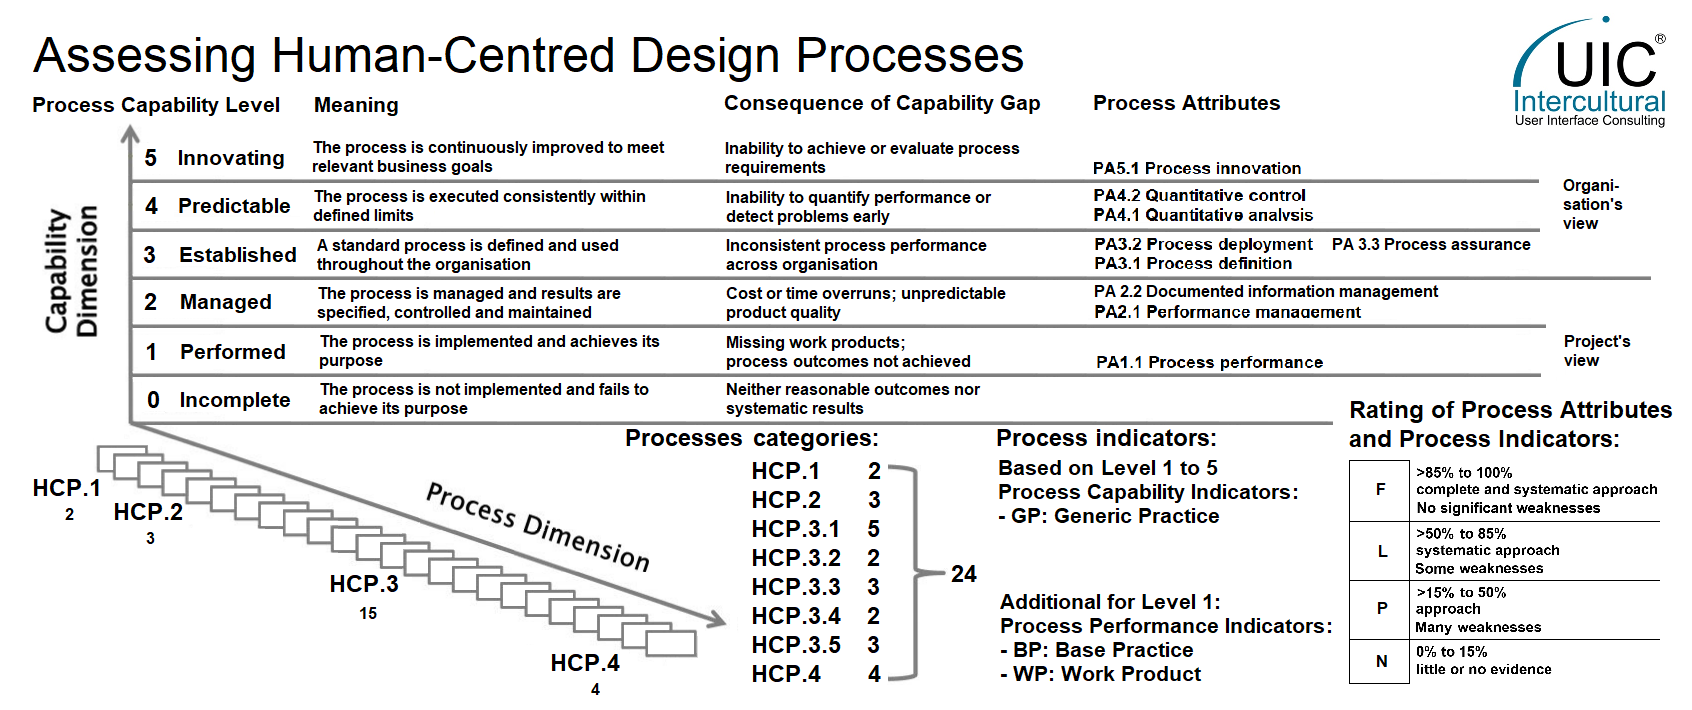 Assessierung von Human-Centred-Design Prozessen